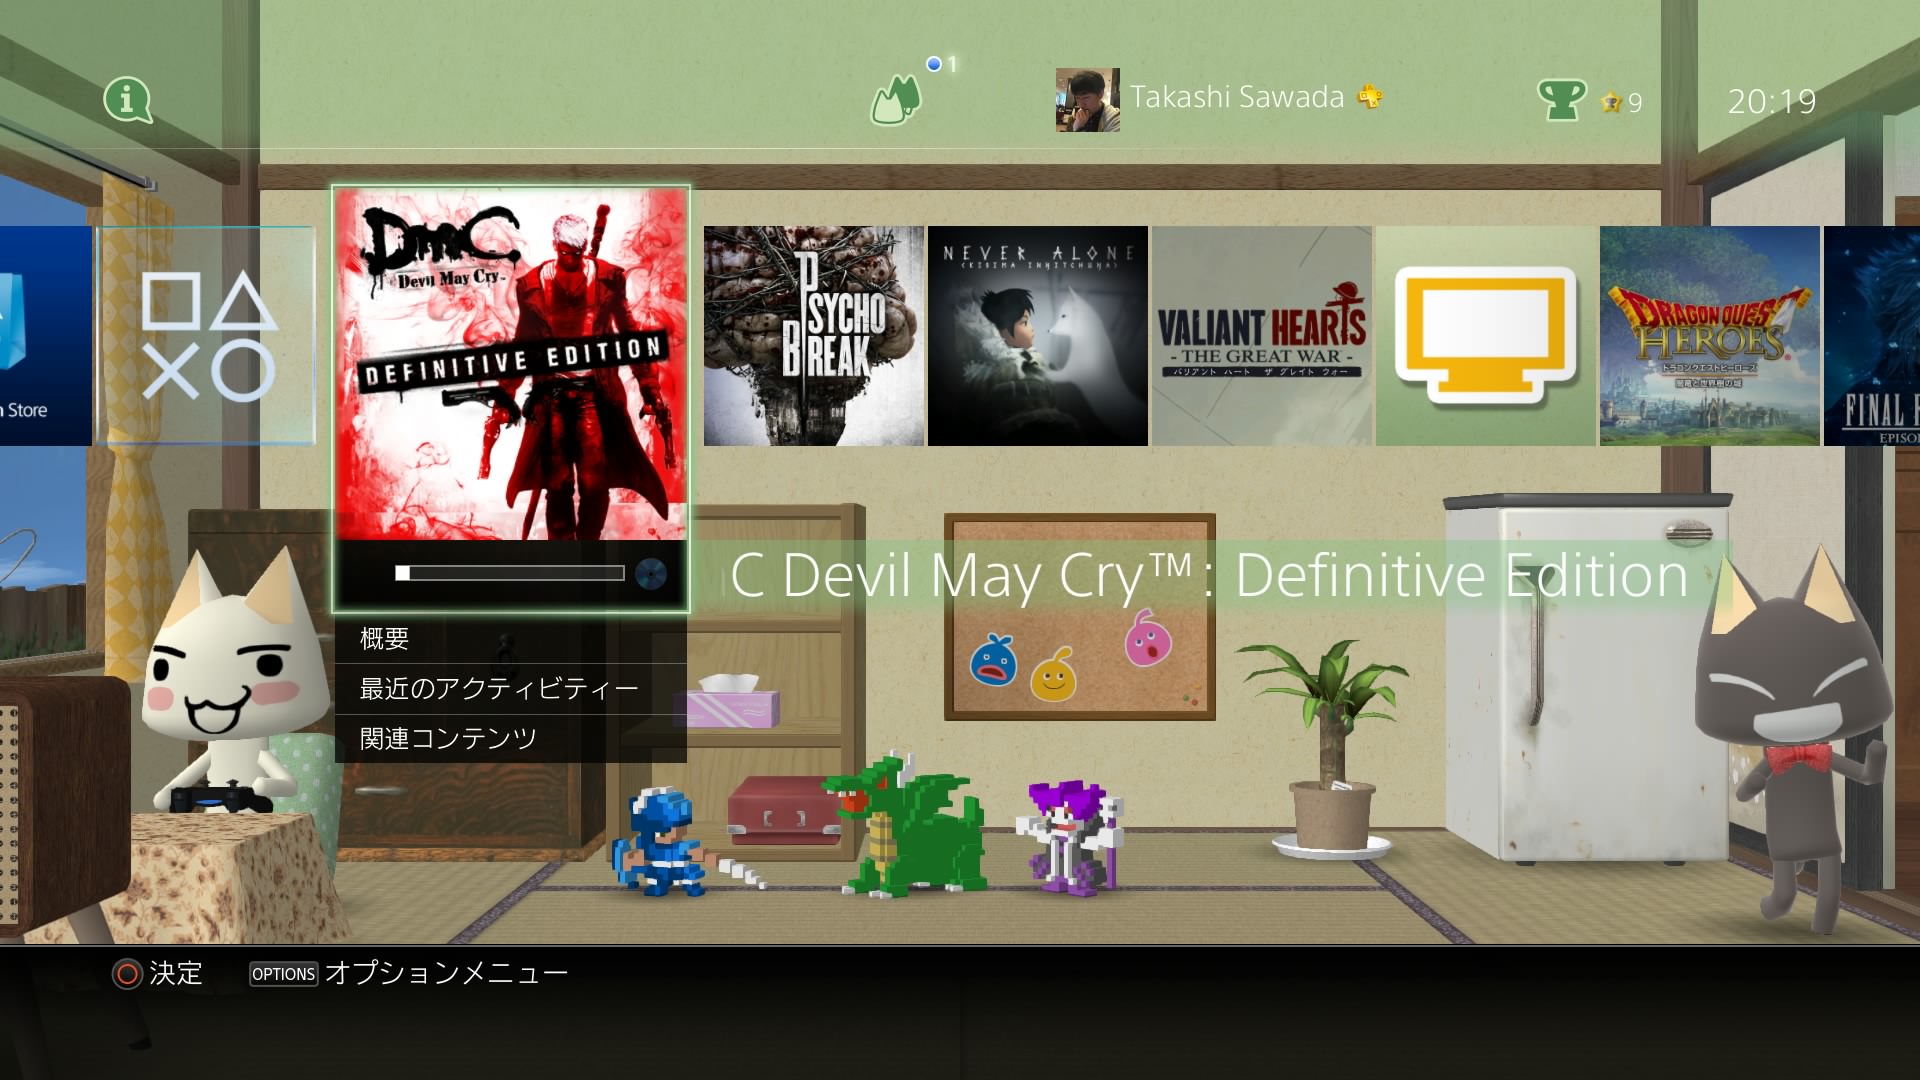 日本版のDmC Devil May Cry Definitive Editionが発売されないので、海外版を買ってみた | MIRAI STEREO